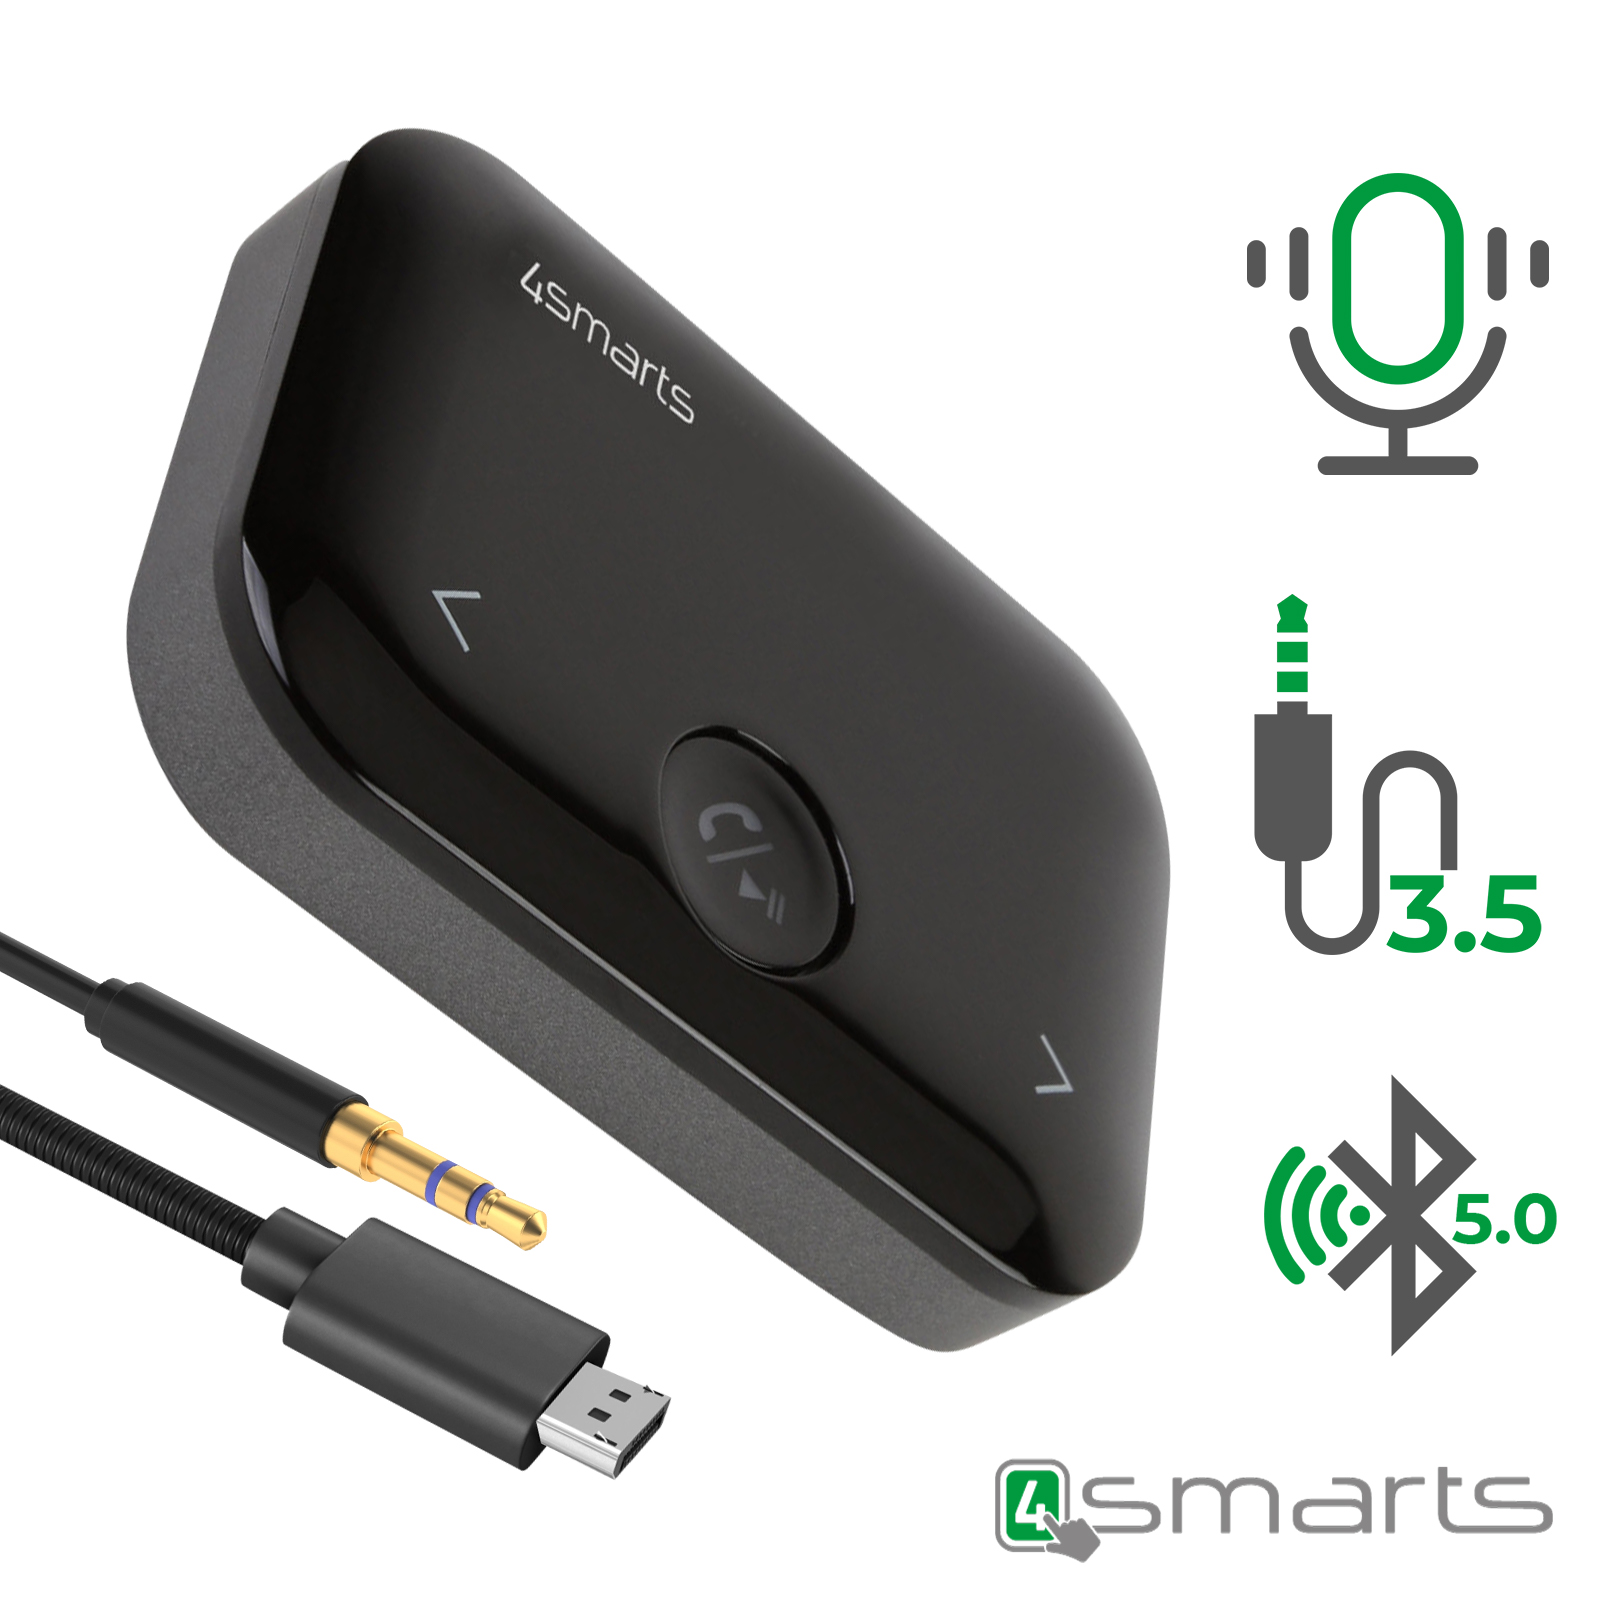 Récepteur audio Bluetooth 4.1 avec sortie audio 3,5 mm - Fonction spéciale  NFC - Plage de transmission 10M - Interrupteur marche / arrêt - Indicateur